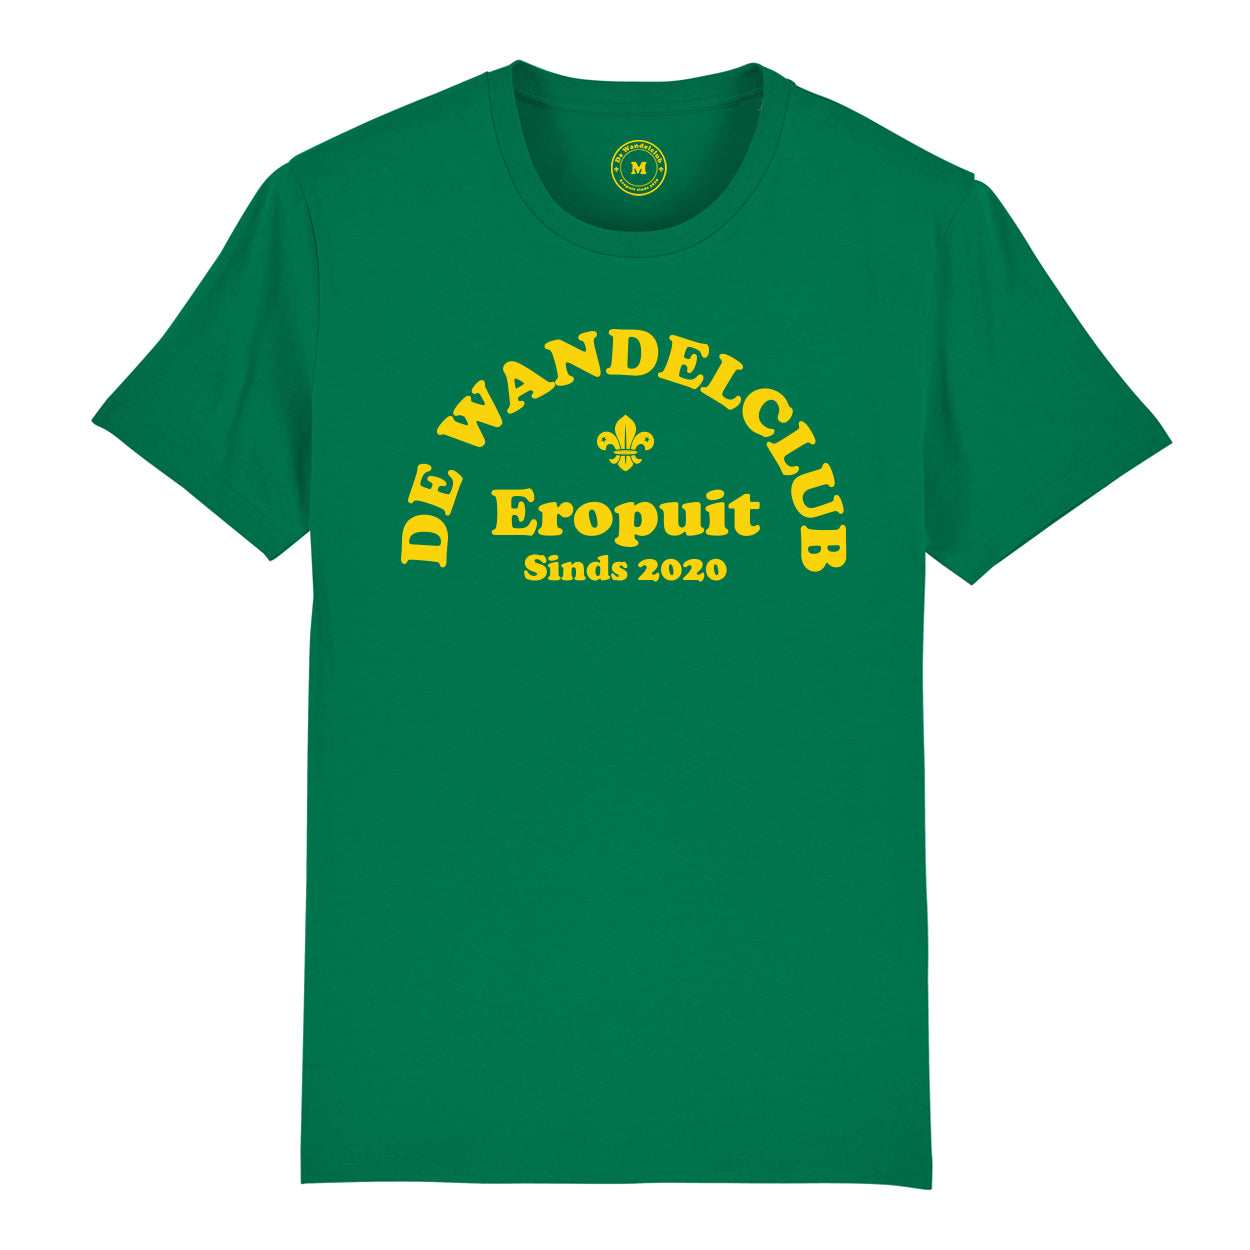 T-shirt de Wandelclub - Groen